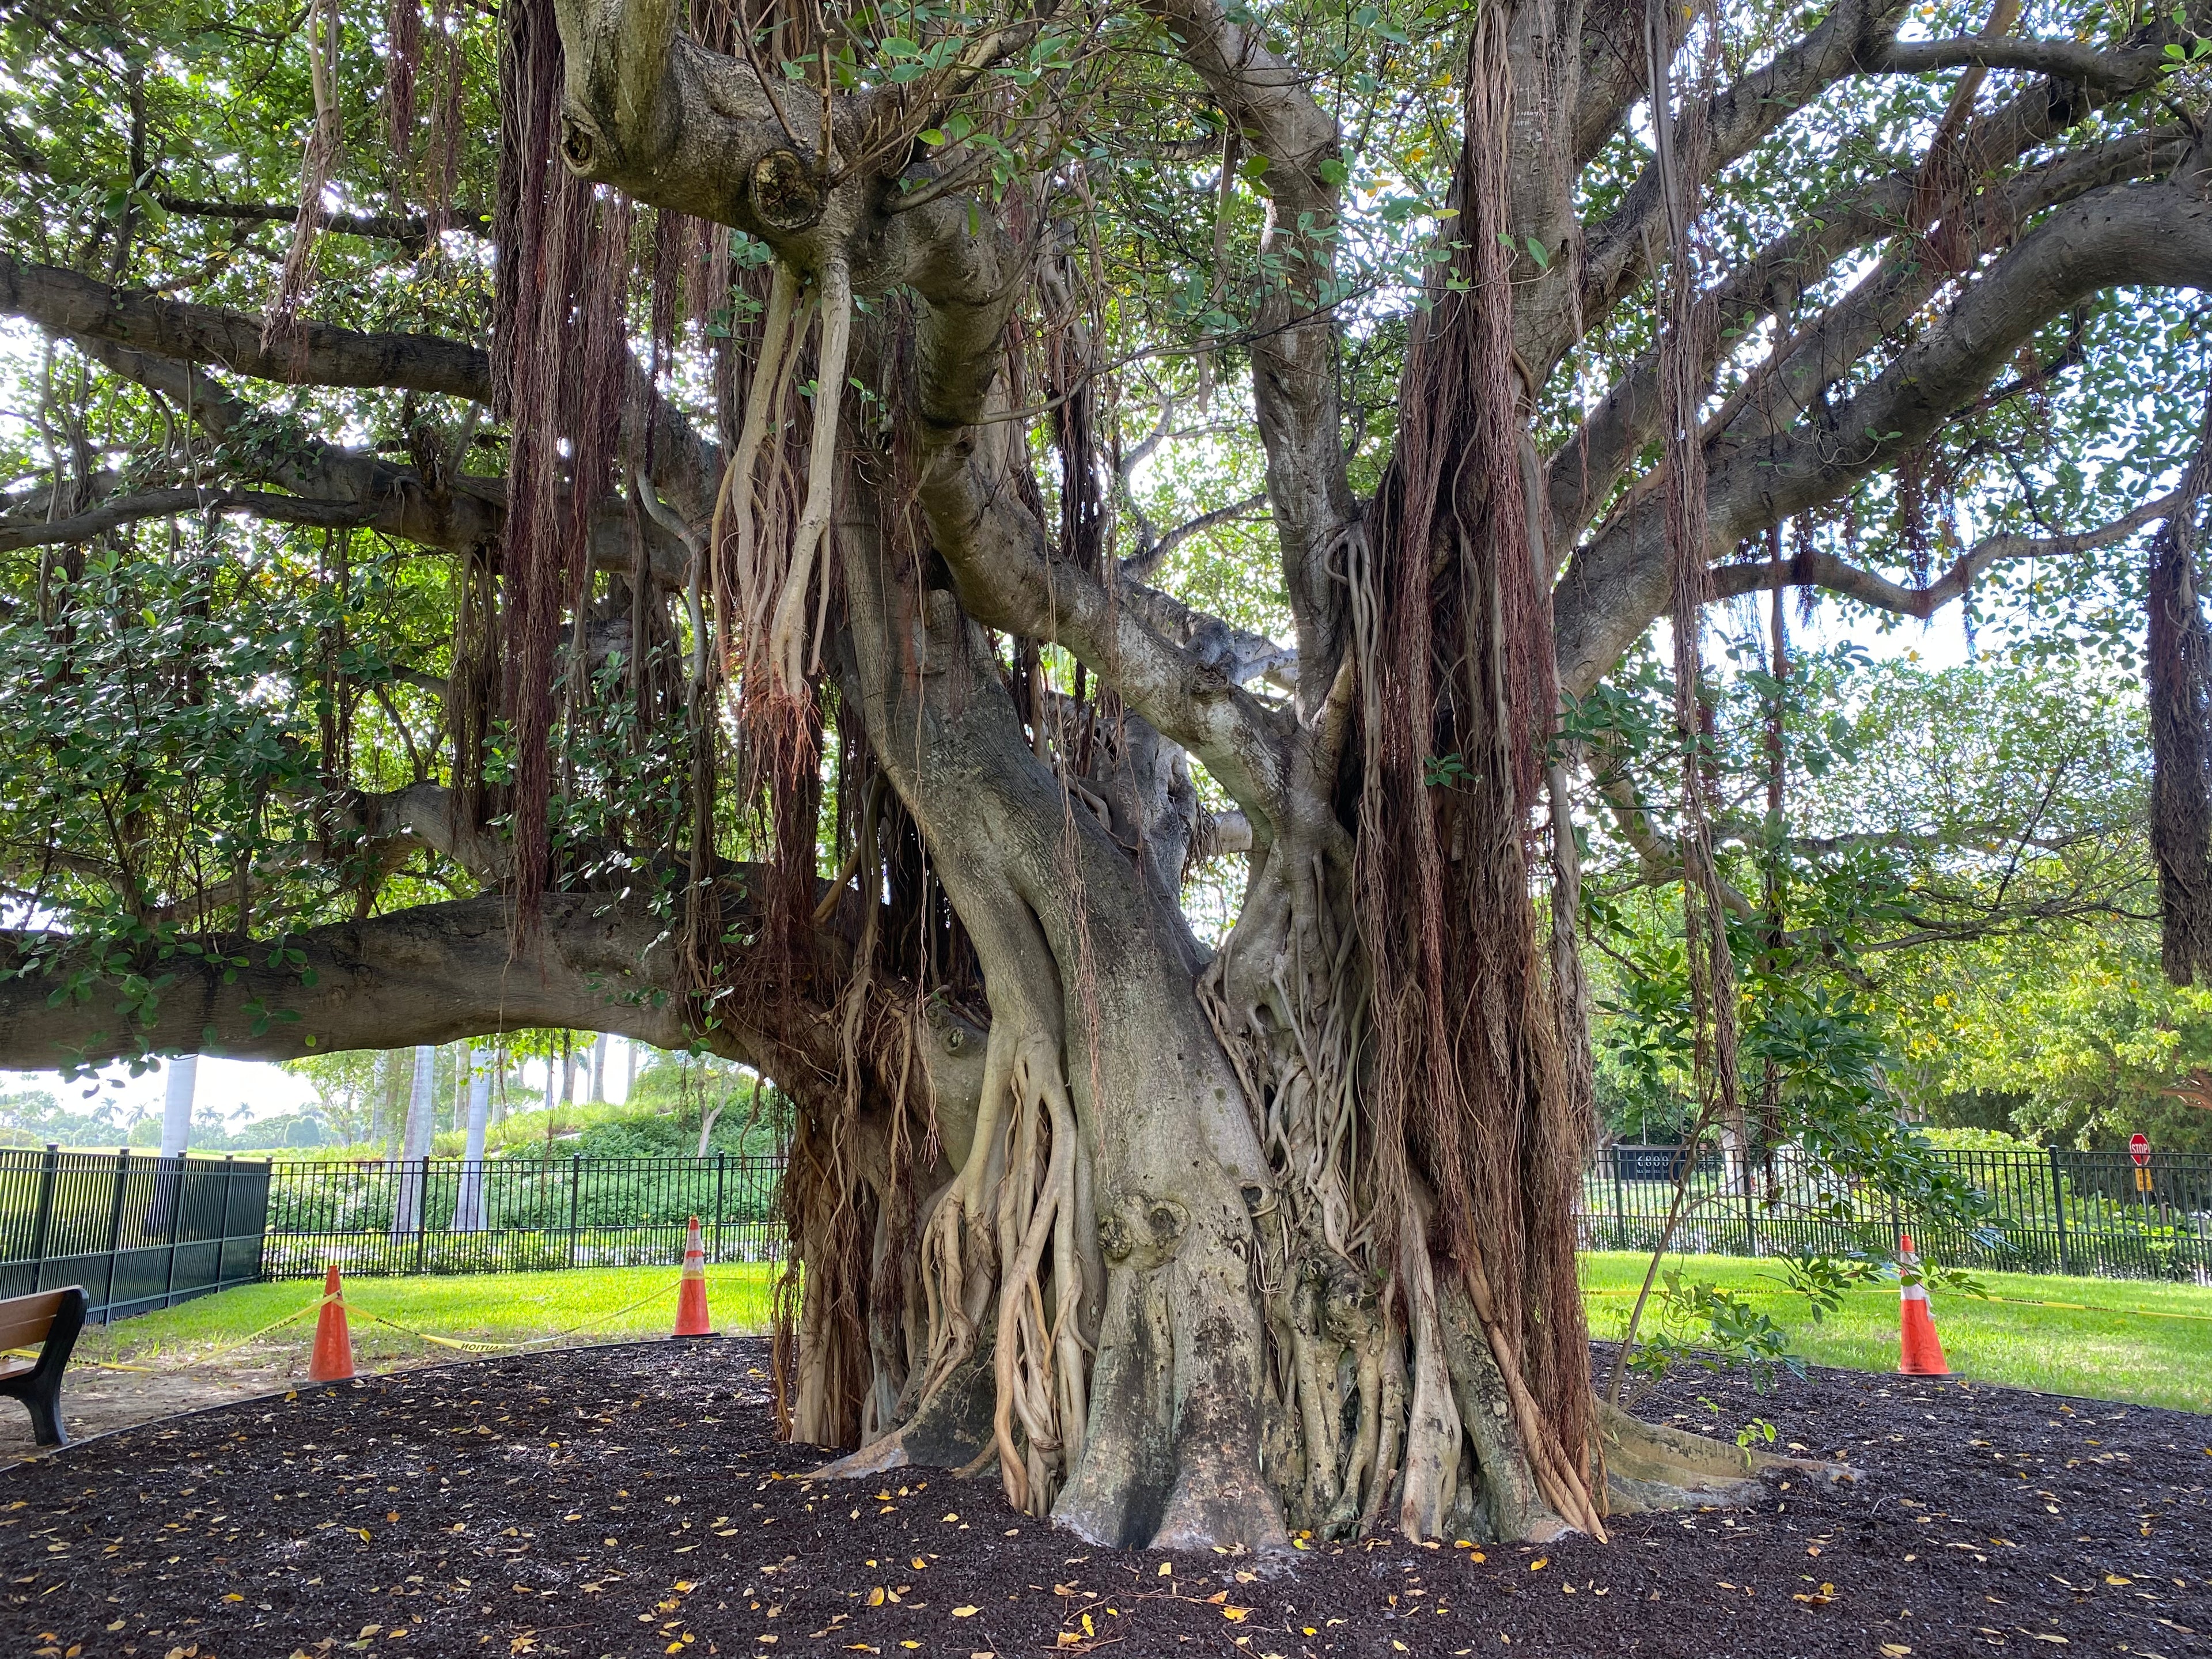 Banyan Tree, Ficus Benghalensisis